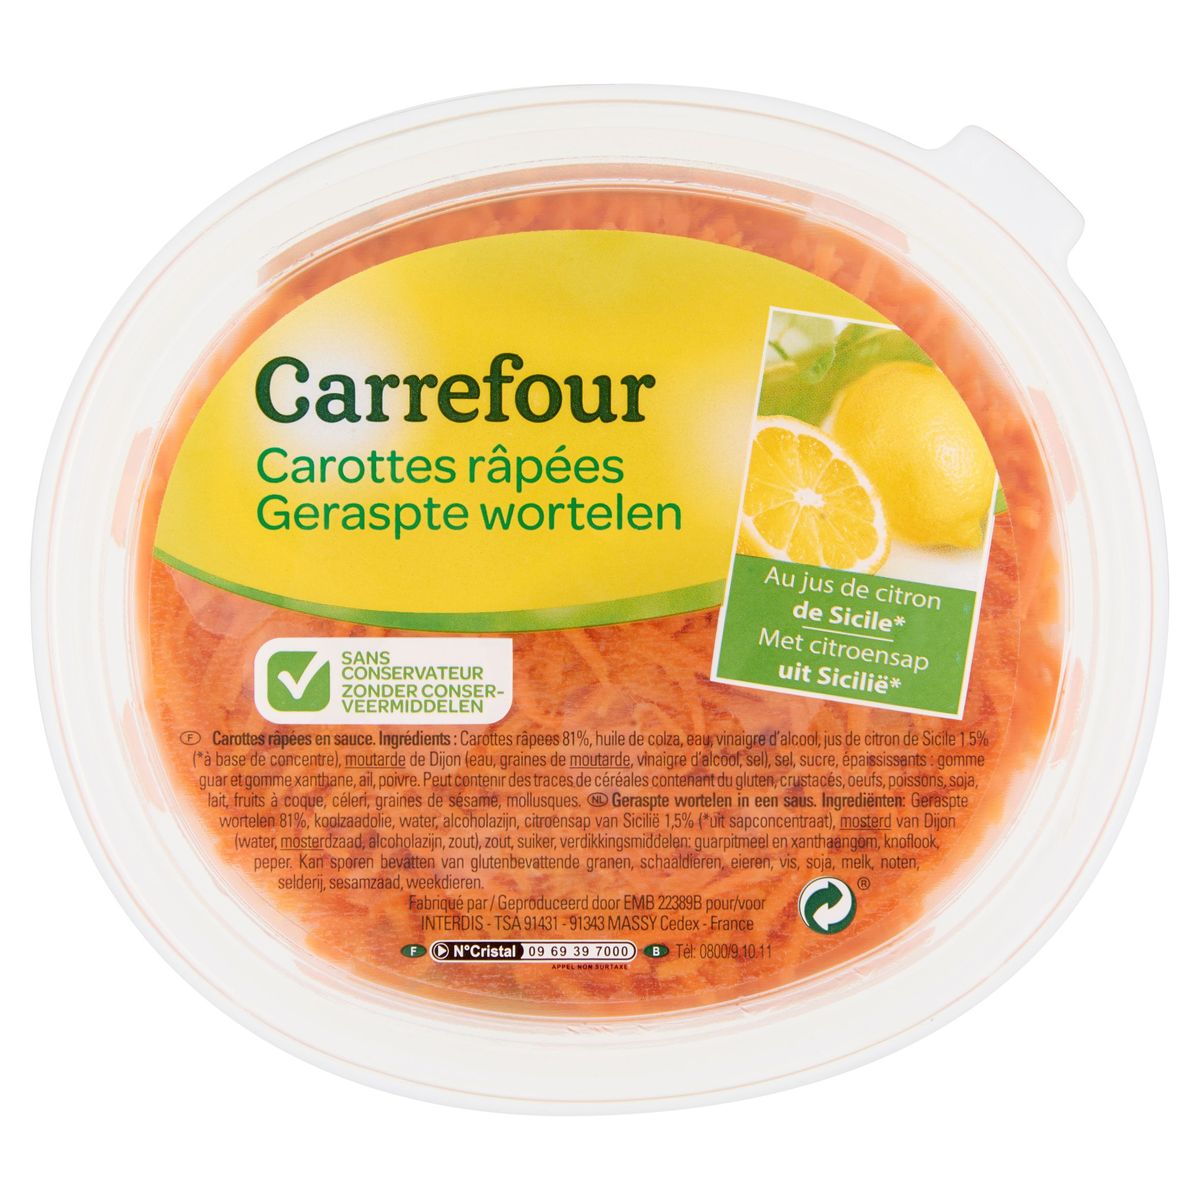 Carrefour Geraspte Wortelen met Citroensap uit Sicilië 300 g